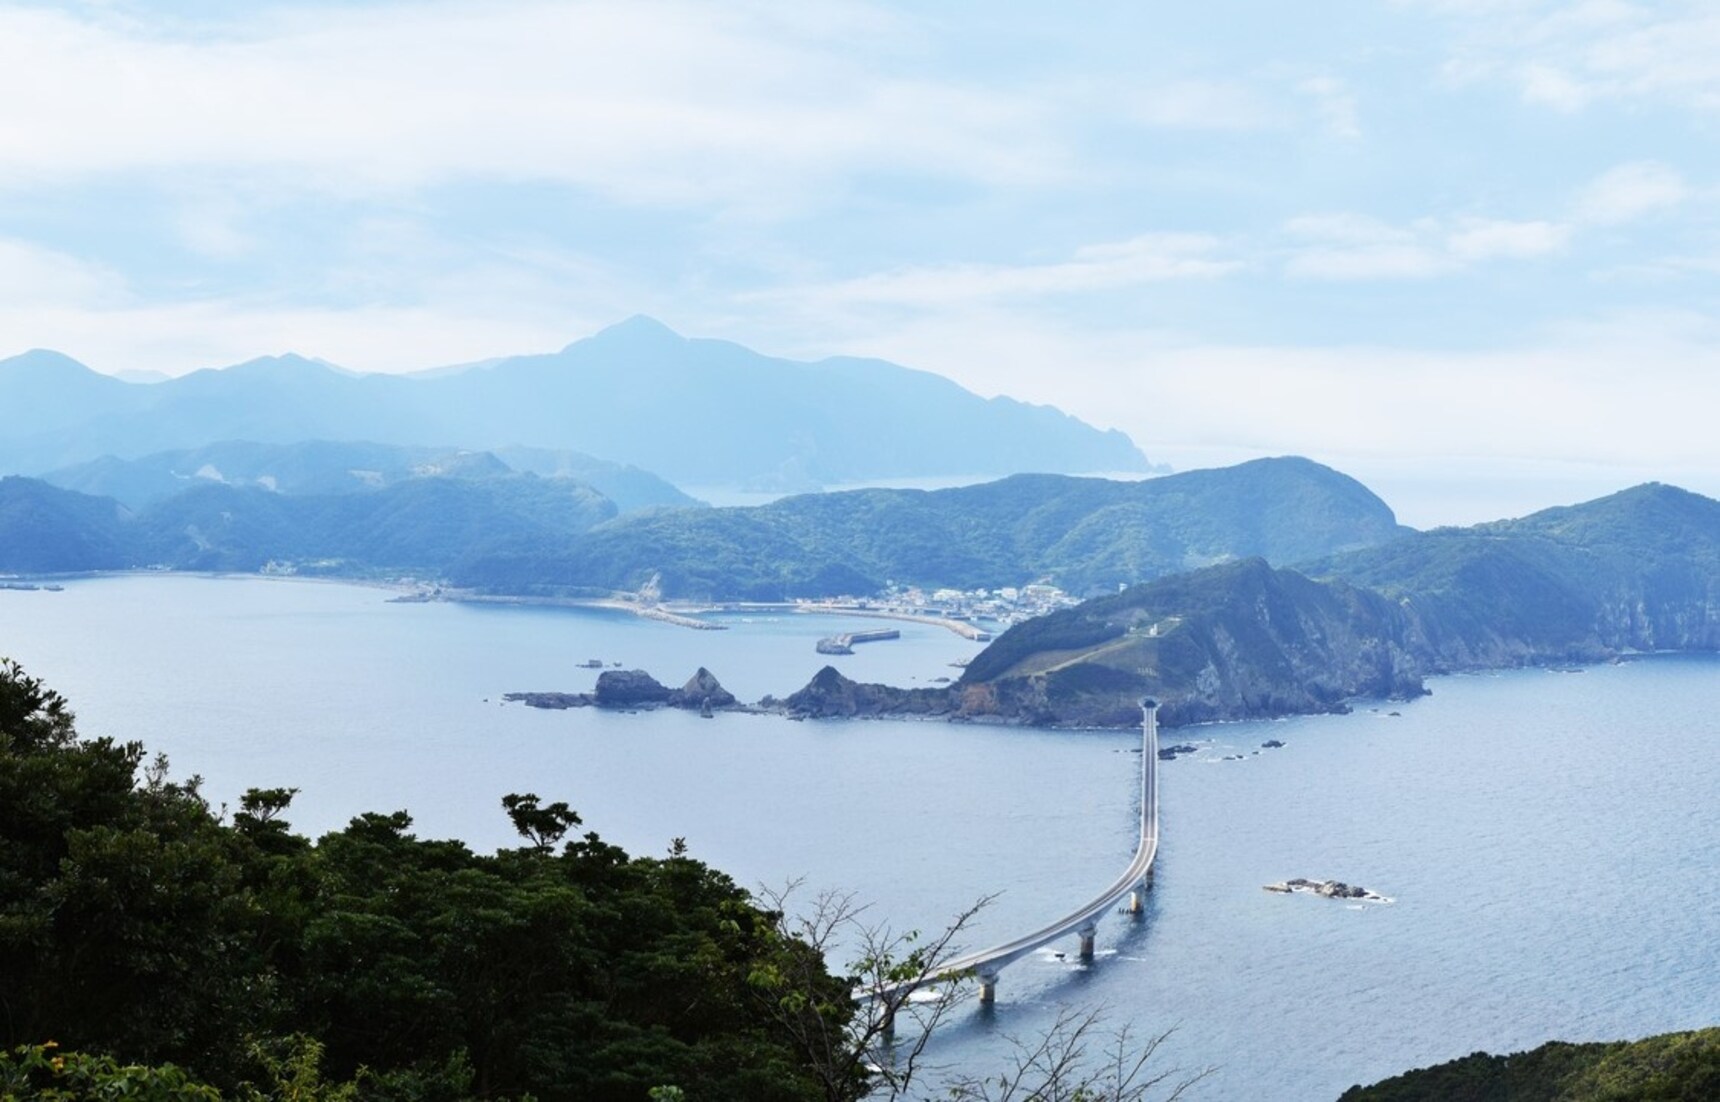 【日本鹿兒島】溢南國風情的「甑島列島」慢活之旅